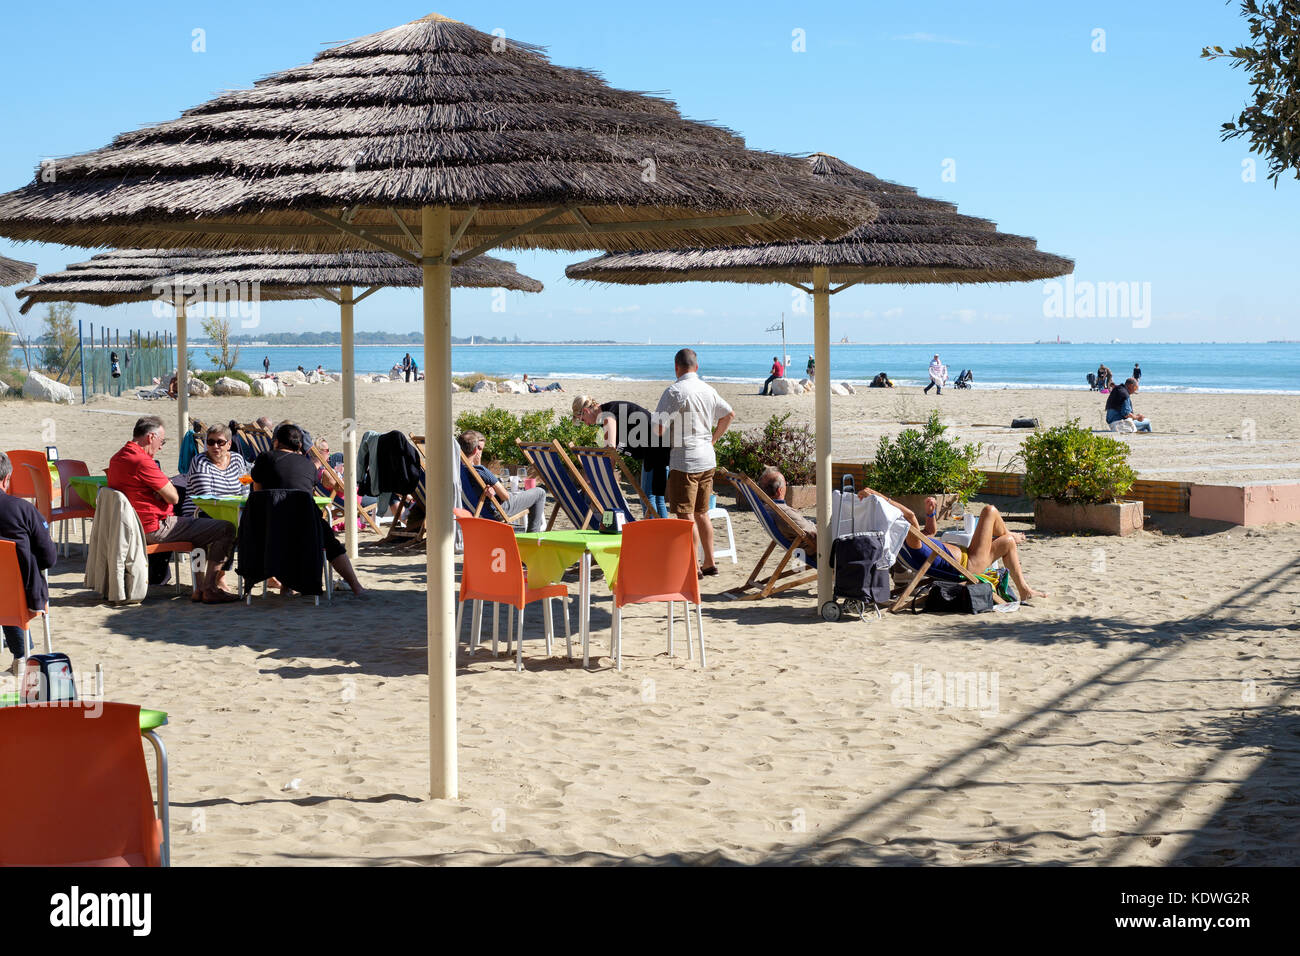 La gente di relax presso il Blue Moon snack bar sulla spiaggia, Lido di Venezia, Venezia, Italia Foto Stock